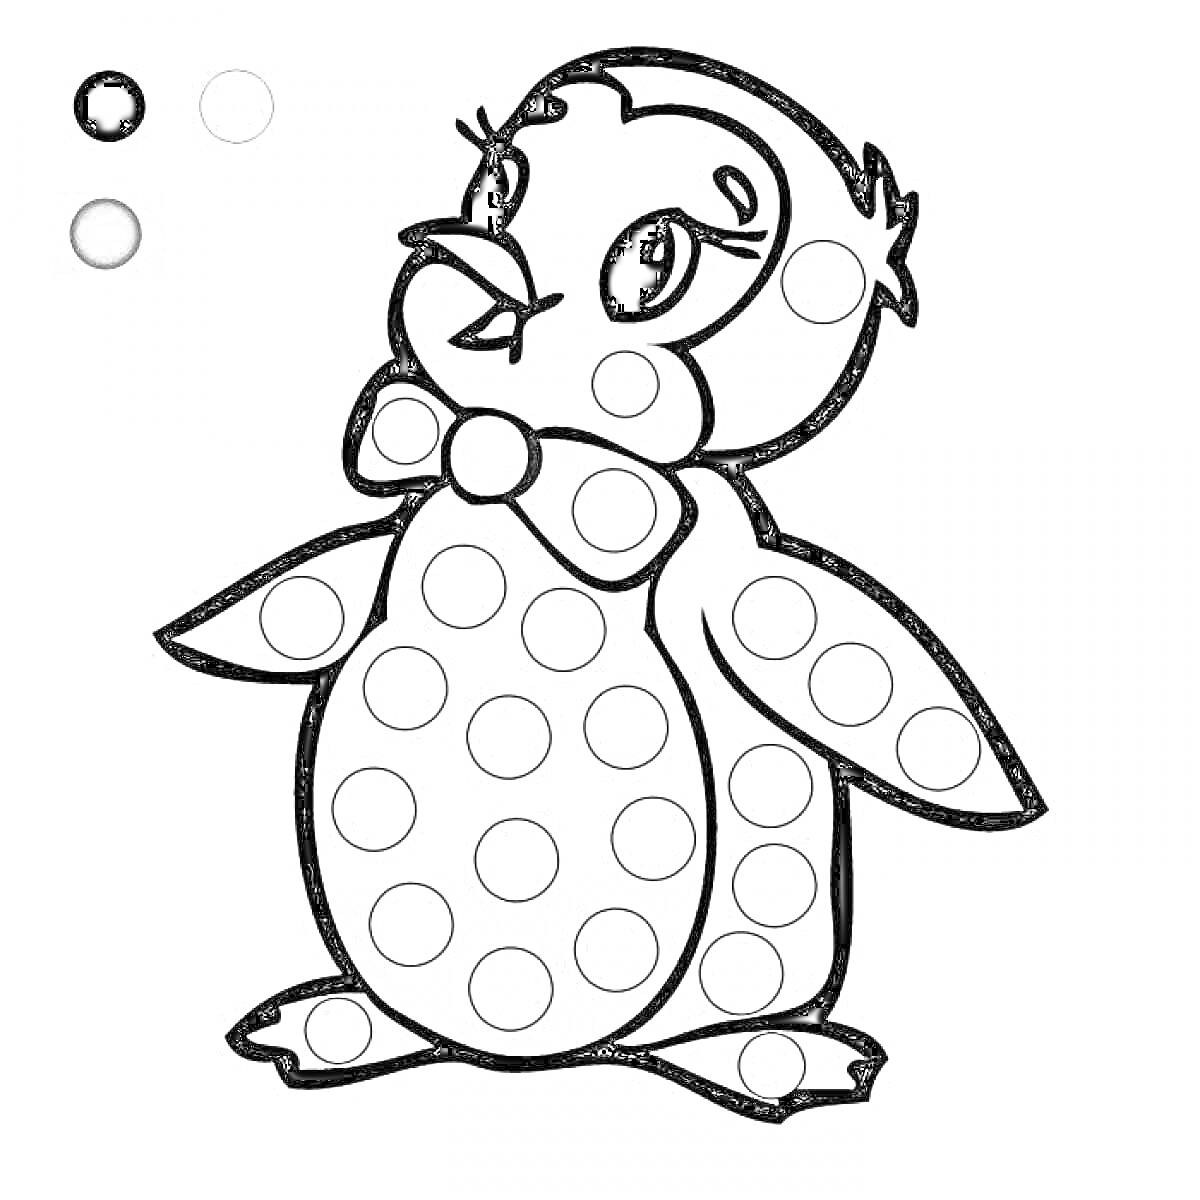 Раскраска Пингвин с бабочкой и кружками для пальчикового раскрашивания